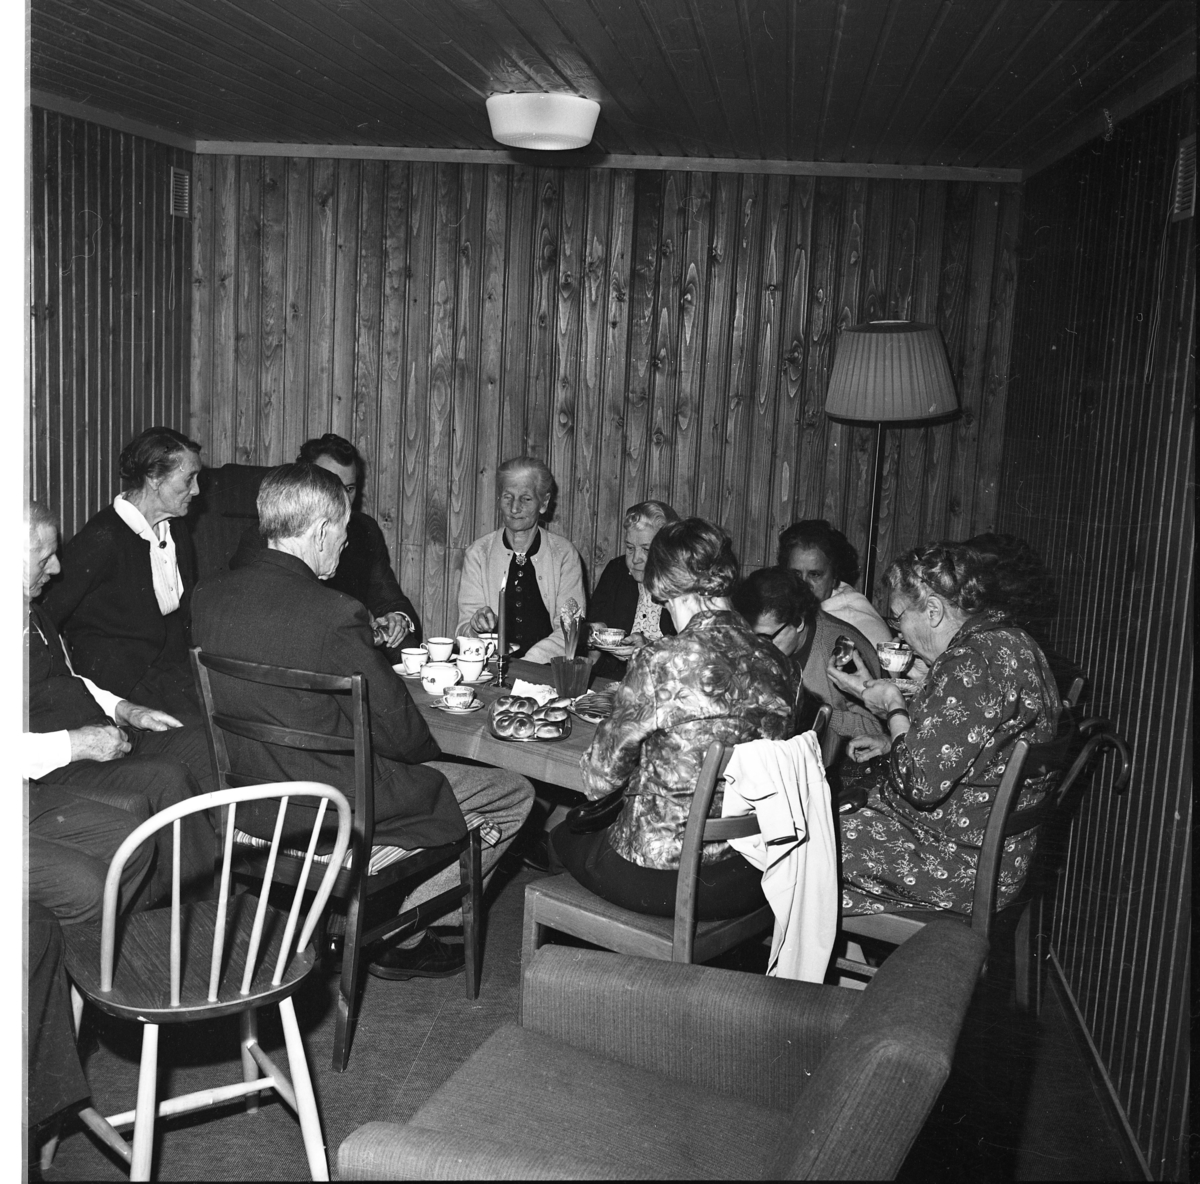 Äldre damer och herrar sitter omkring ett rektangulärt bord med duk, tända ljus samt kaffekoppar och kakfat. De fikar.